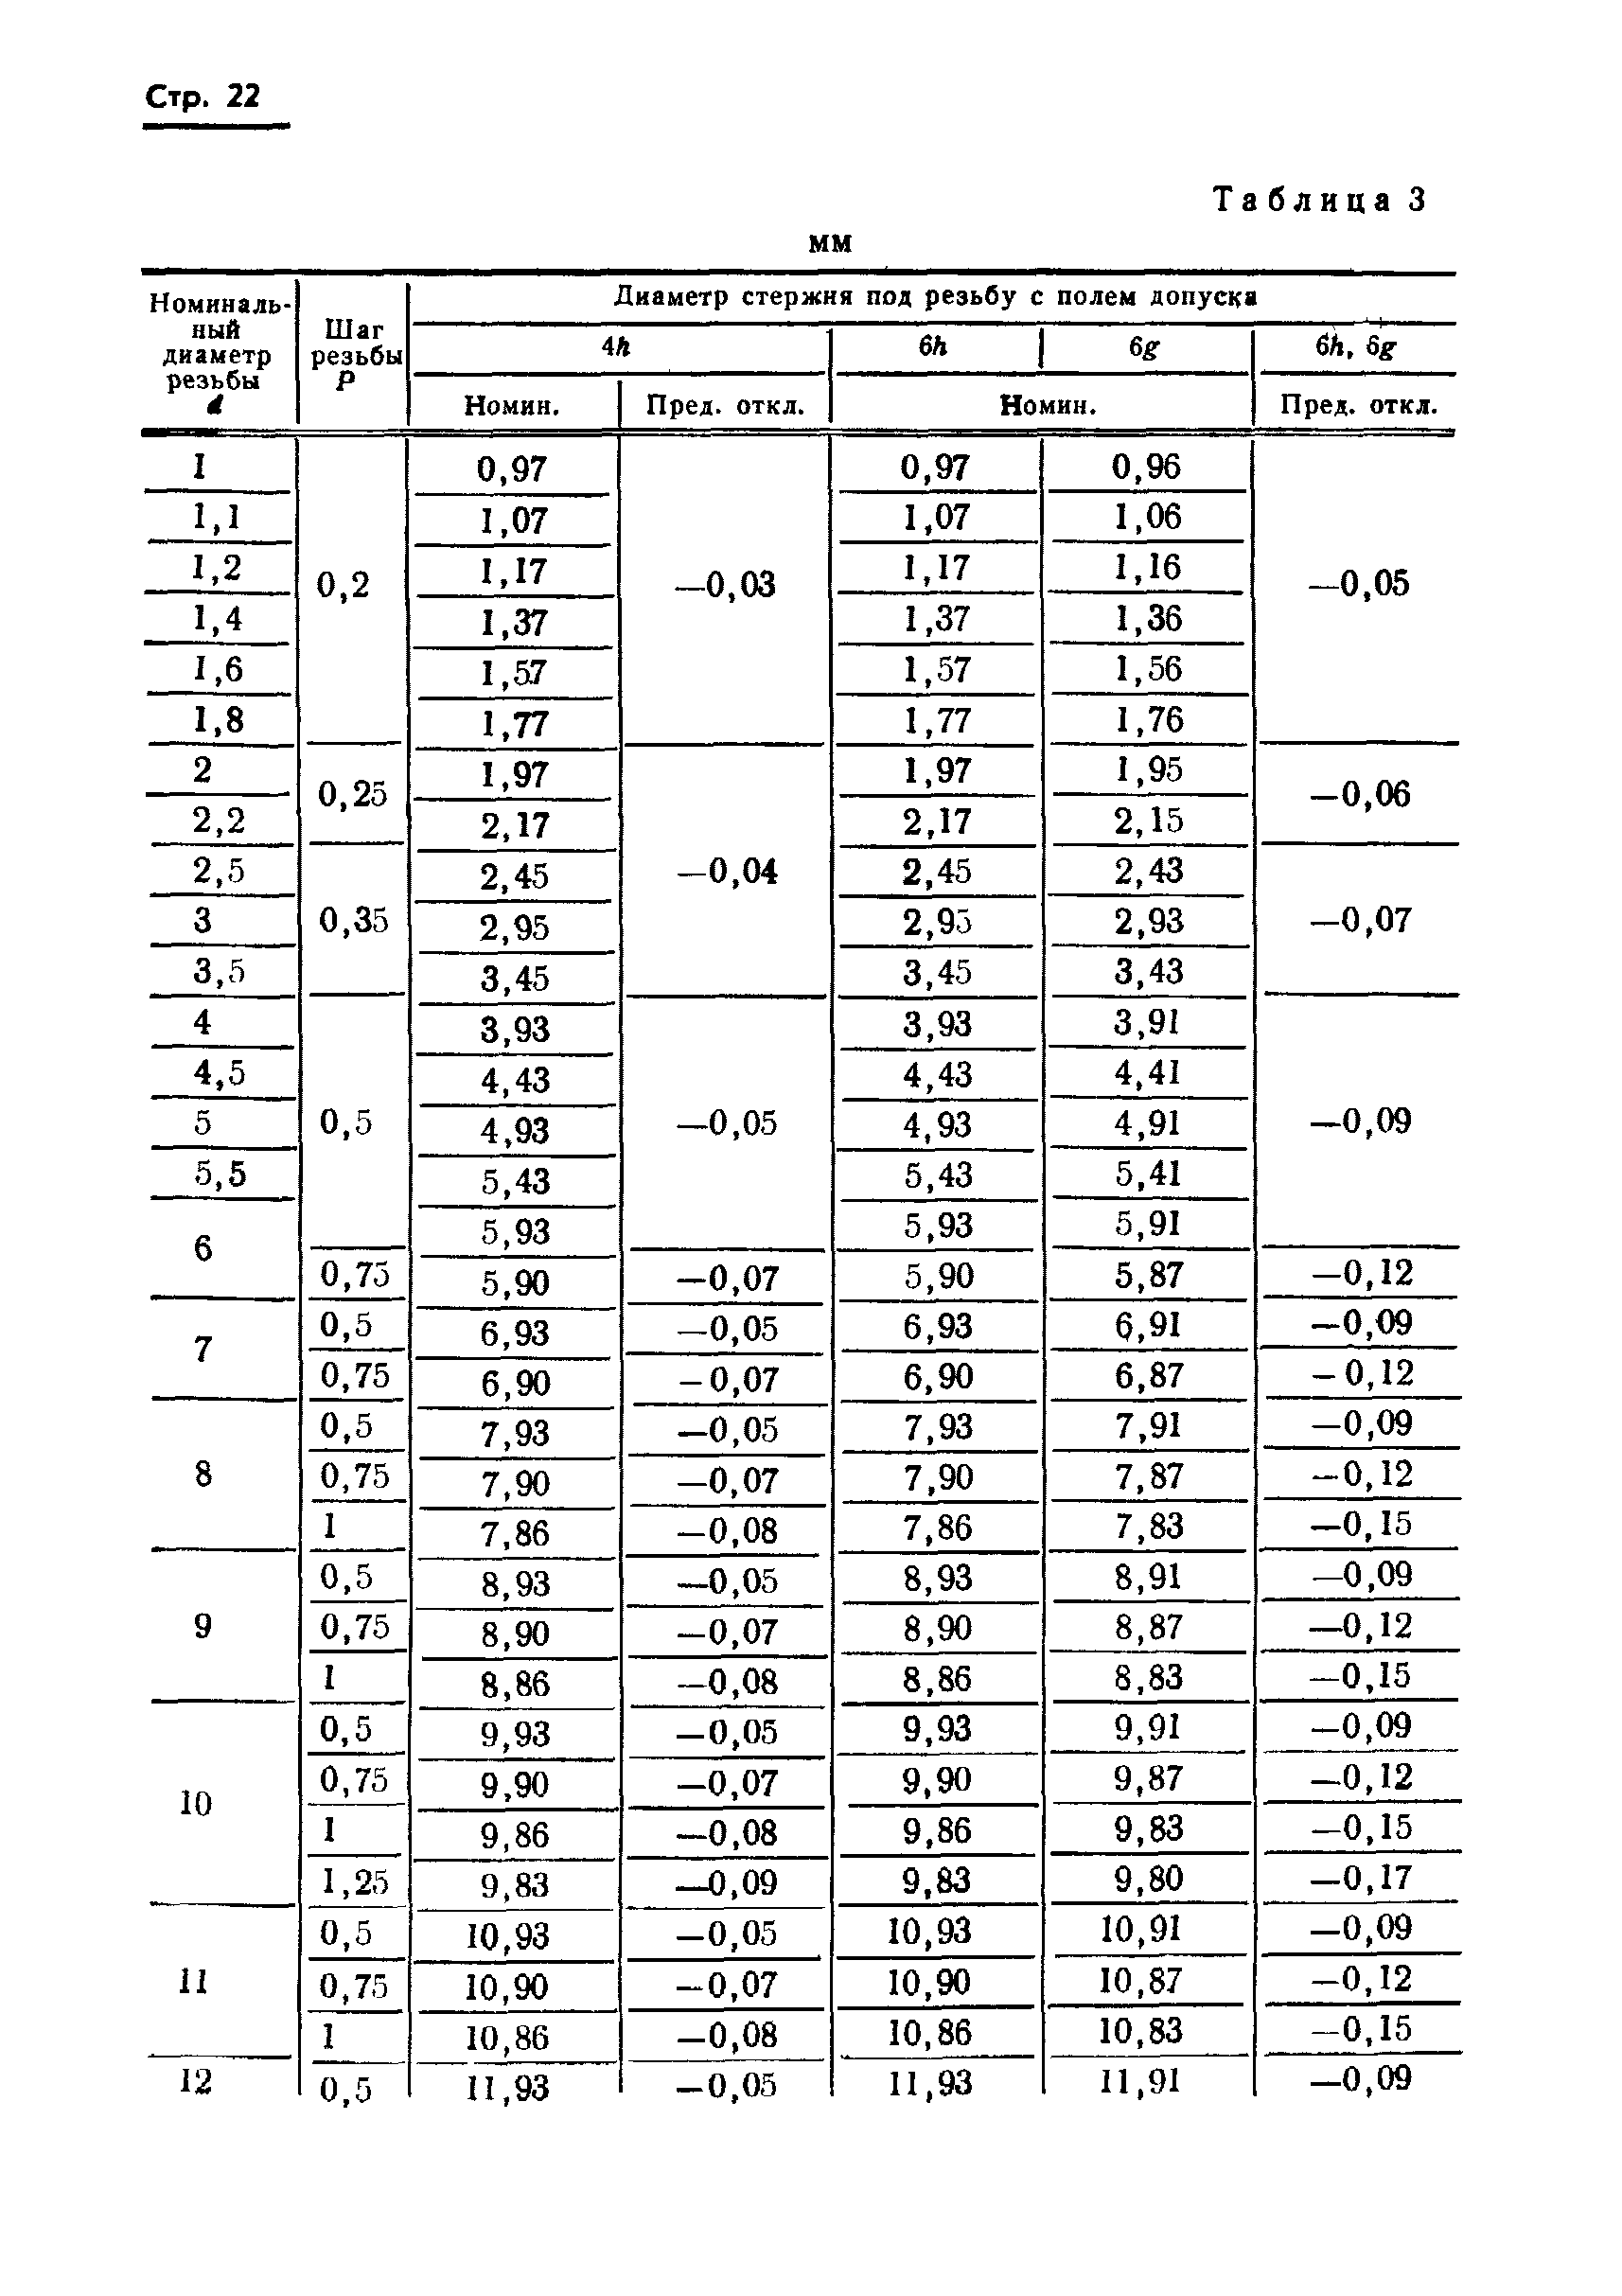 Таблица резьб метрических основных: Метрические резьбы М0,25-М600. Шаг .